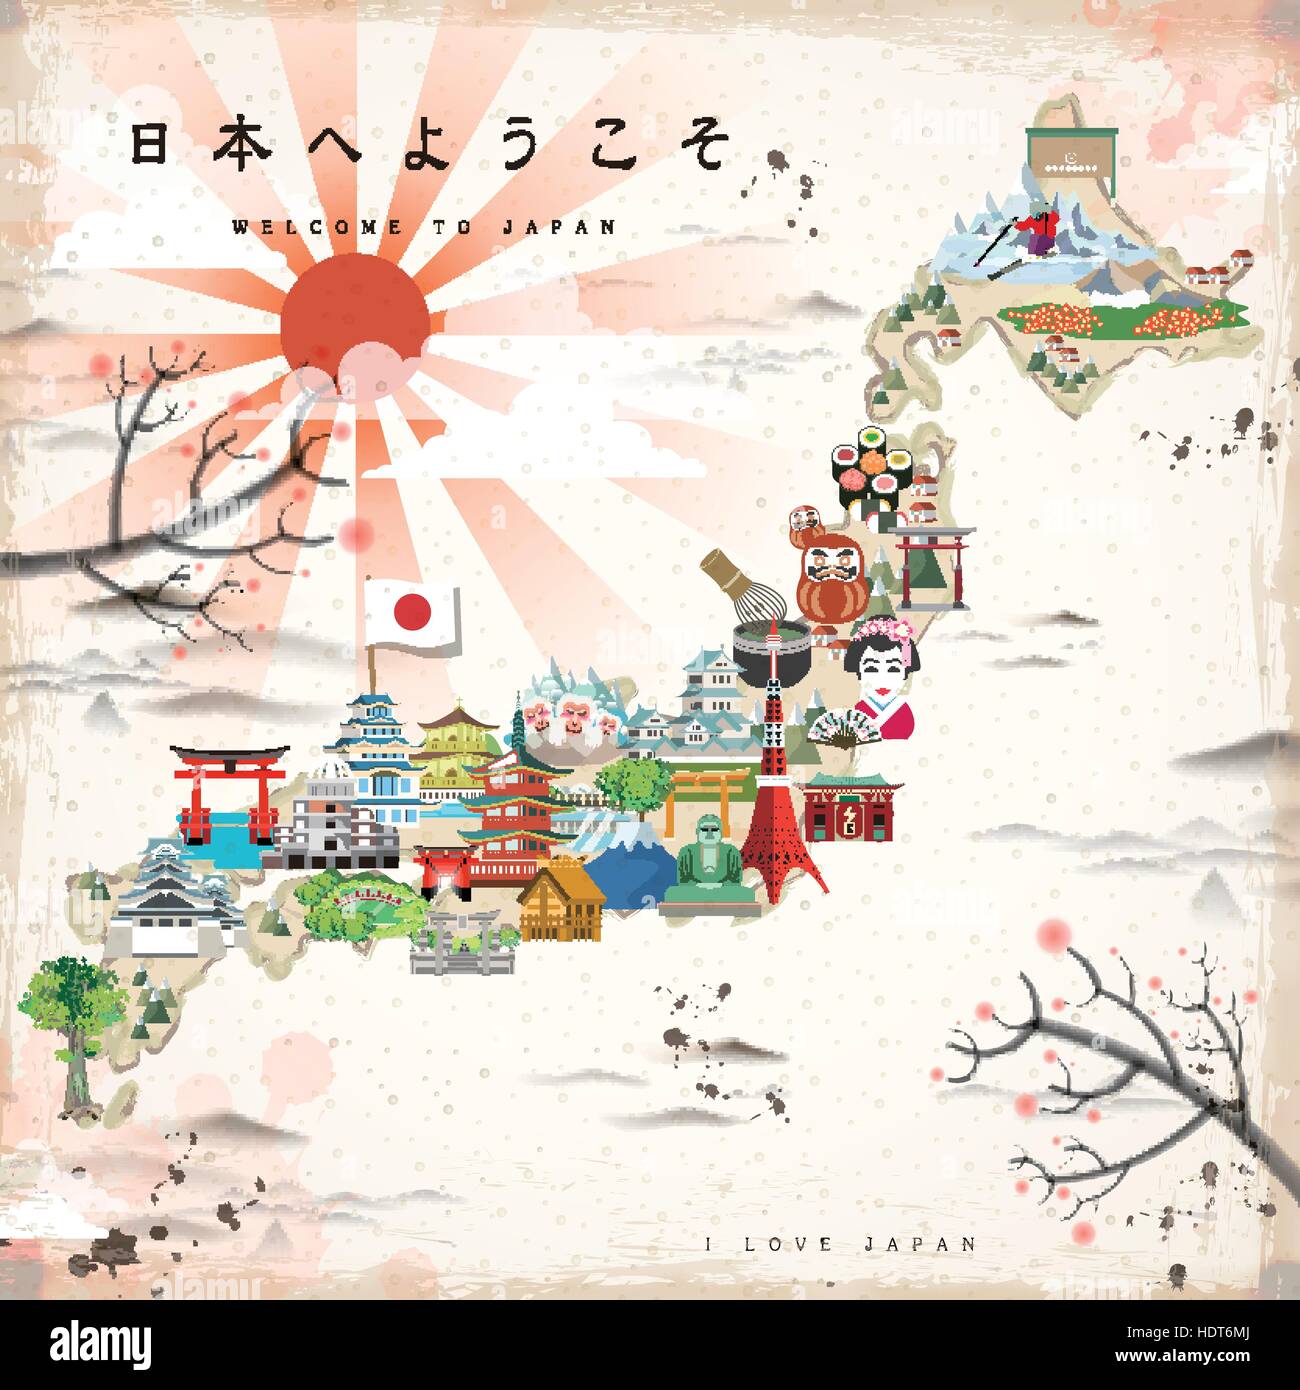 Bellissimo il Giappone mappa di viaggio - Benvenuto al Giappone in giapponese sulla parte superiore sinistra Illustrazione Vettoriale